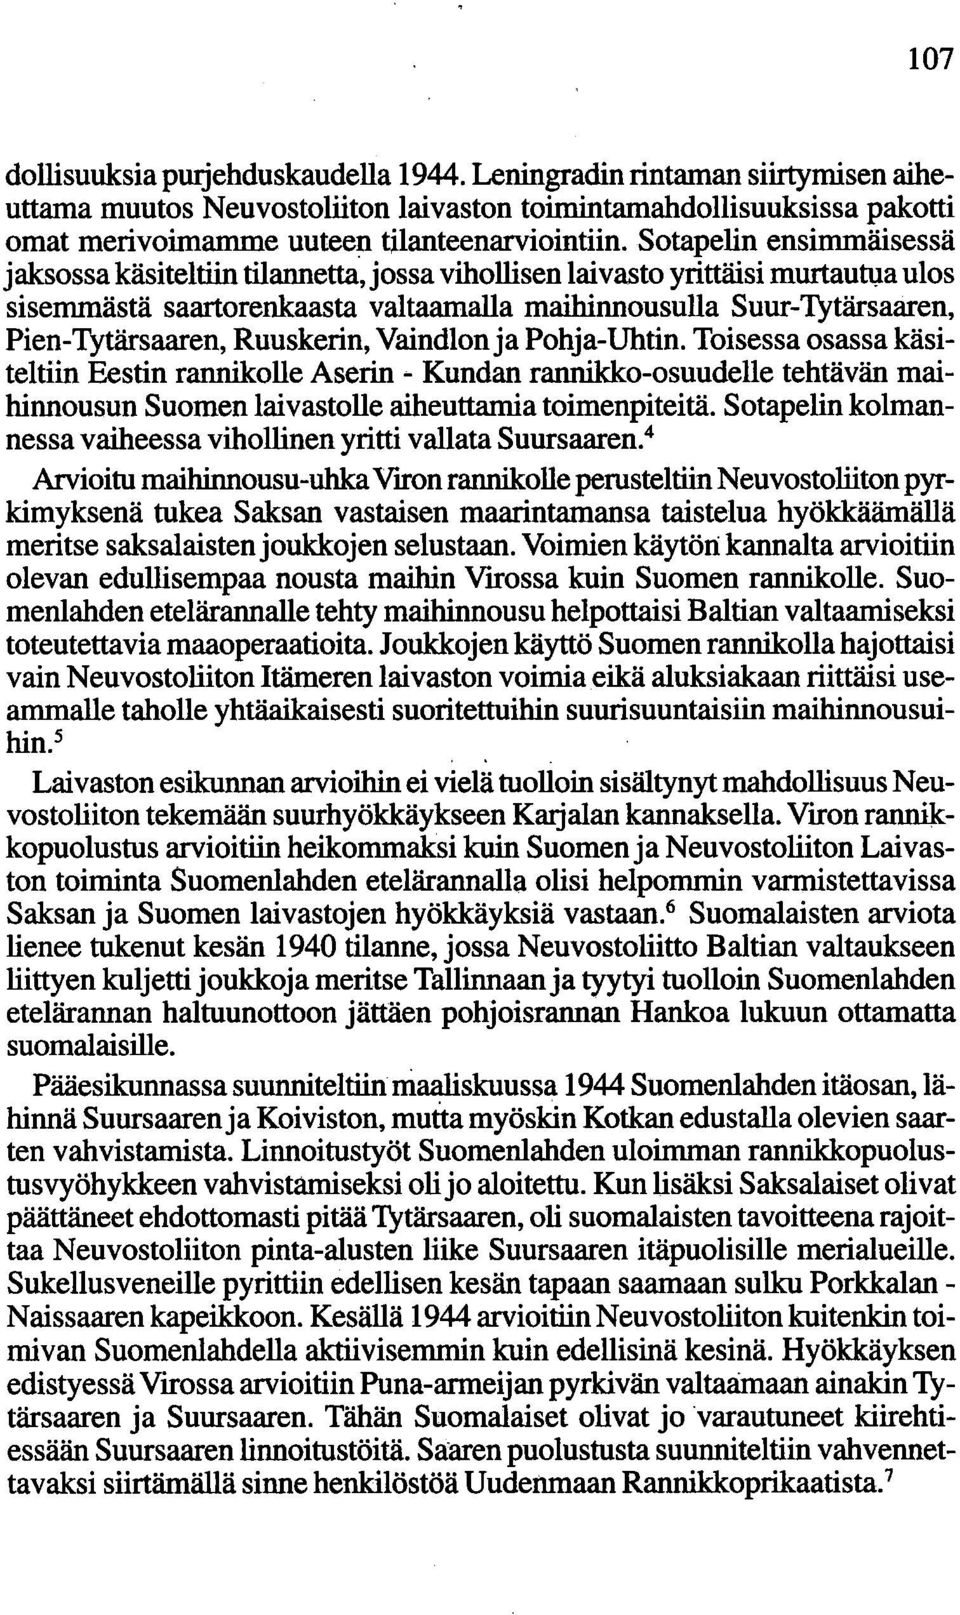 Ruuskerin, Vaindlonja Pohja-Uhtin. Toisessa osassa käsiteltiin Eestin rannikolle Aserln - Kundan rannikko-osuudelle tehtävän maihinnousun Suomen laivastolle aiheuttamia toimenpiteitä.